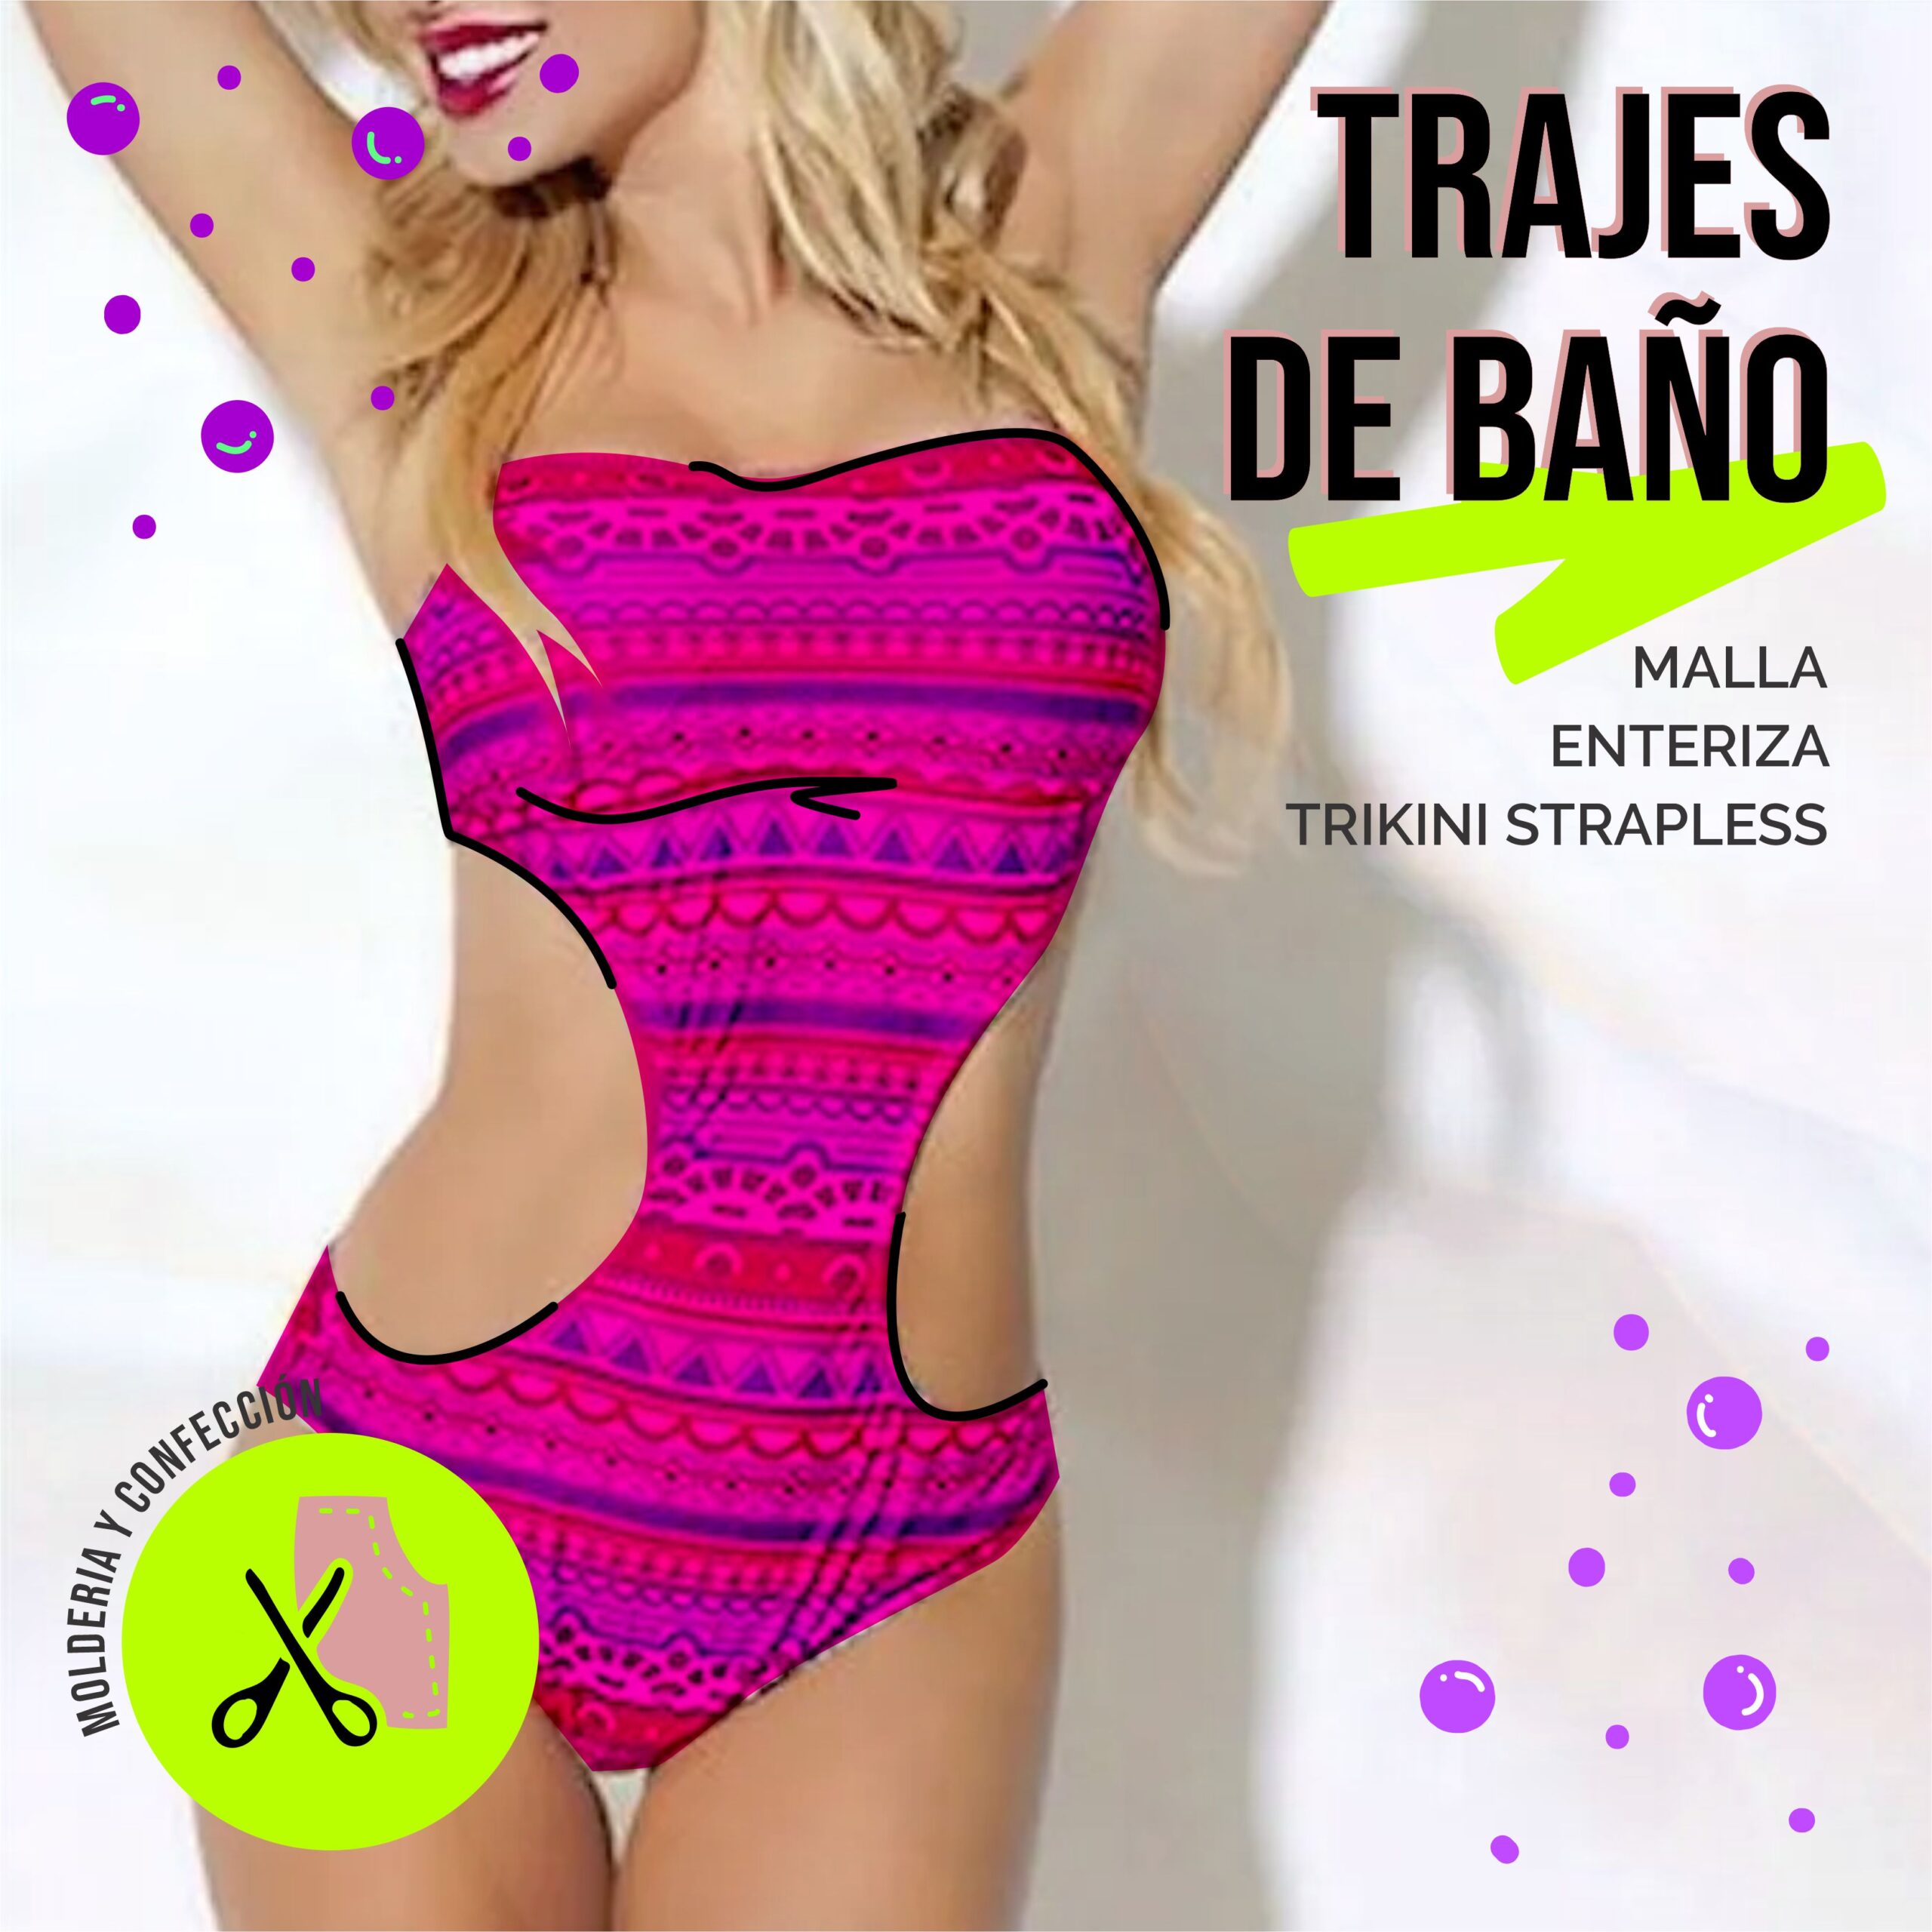 TRAJES DE - Malla Enteriza Trikini y Strapless